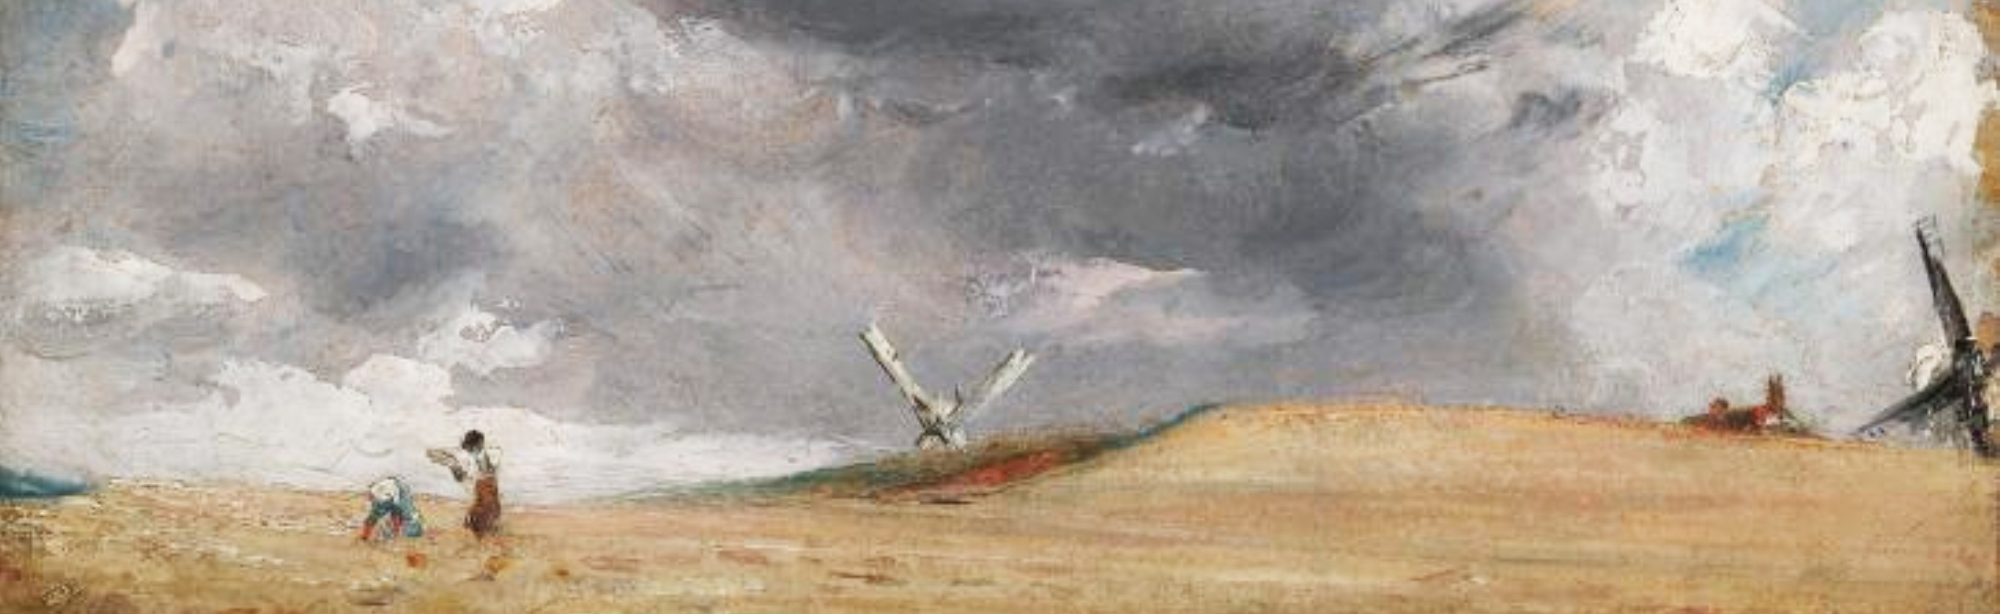 John Constable - The sea near brighton